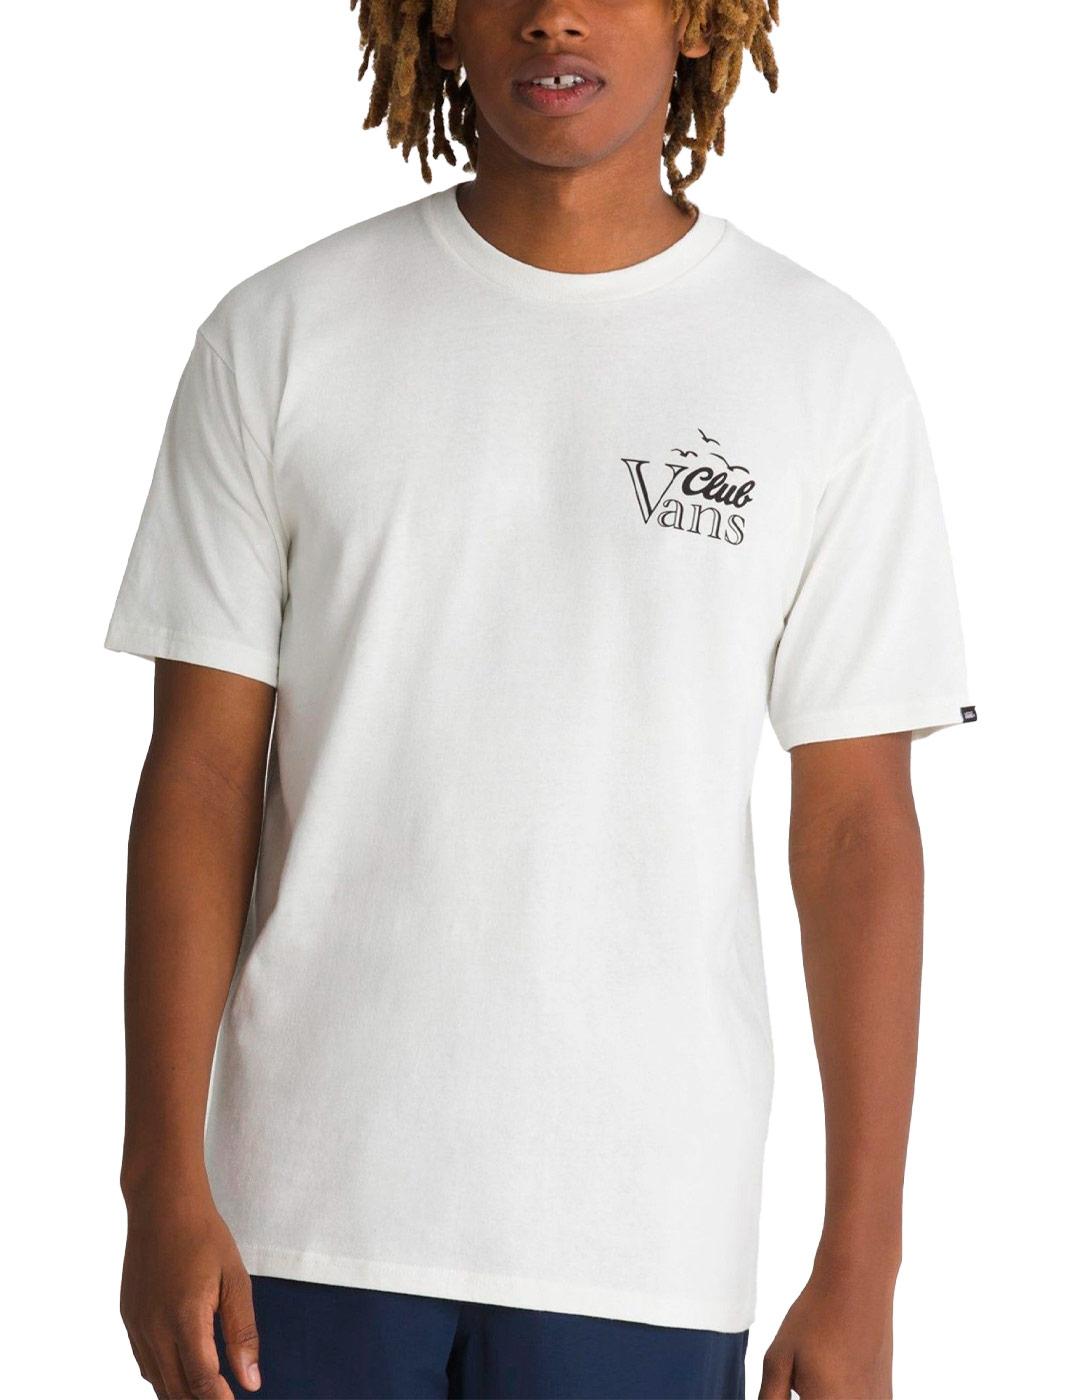 T-shirt Vans Club Vee Beis